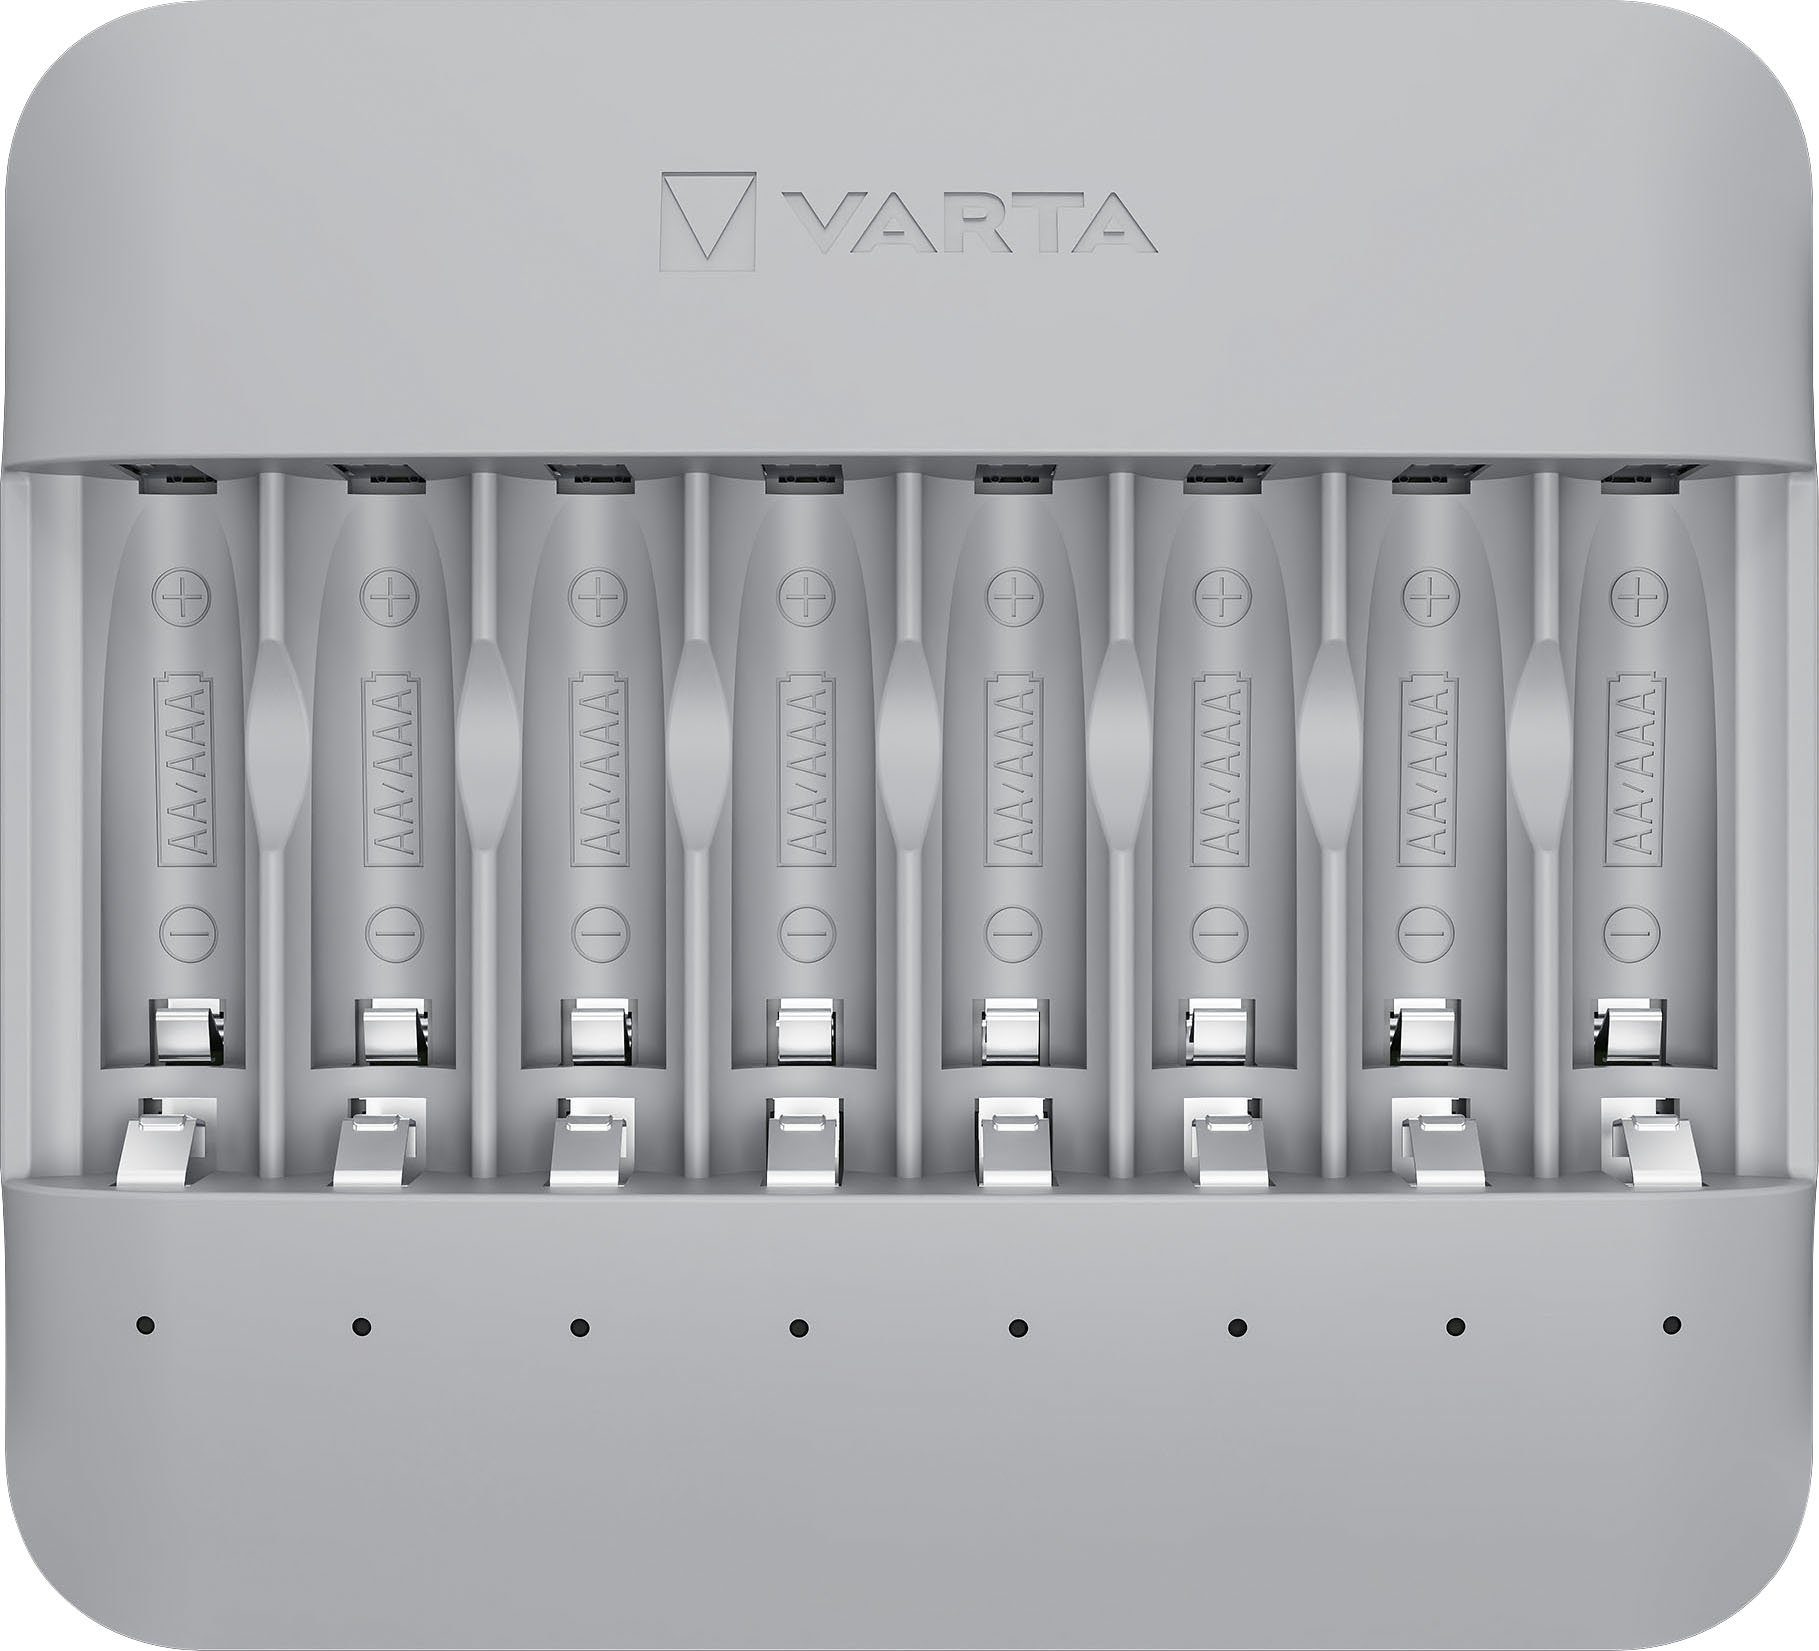 mA), Batterie-Ladegerät VARTA Ladeergebnisse Eco beste Multi und für Recycled Einzelschachtladung (2000 Flexibilität höchste Charger